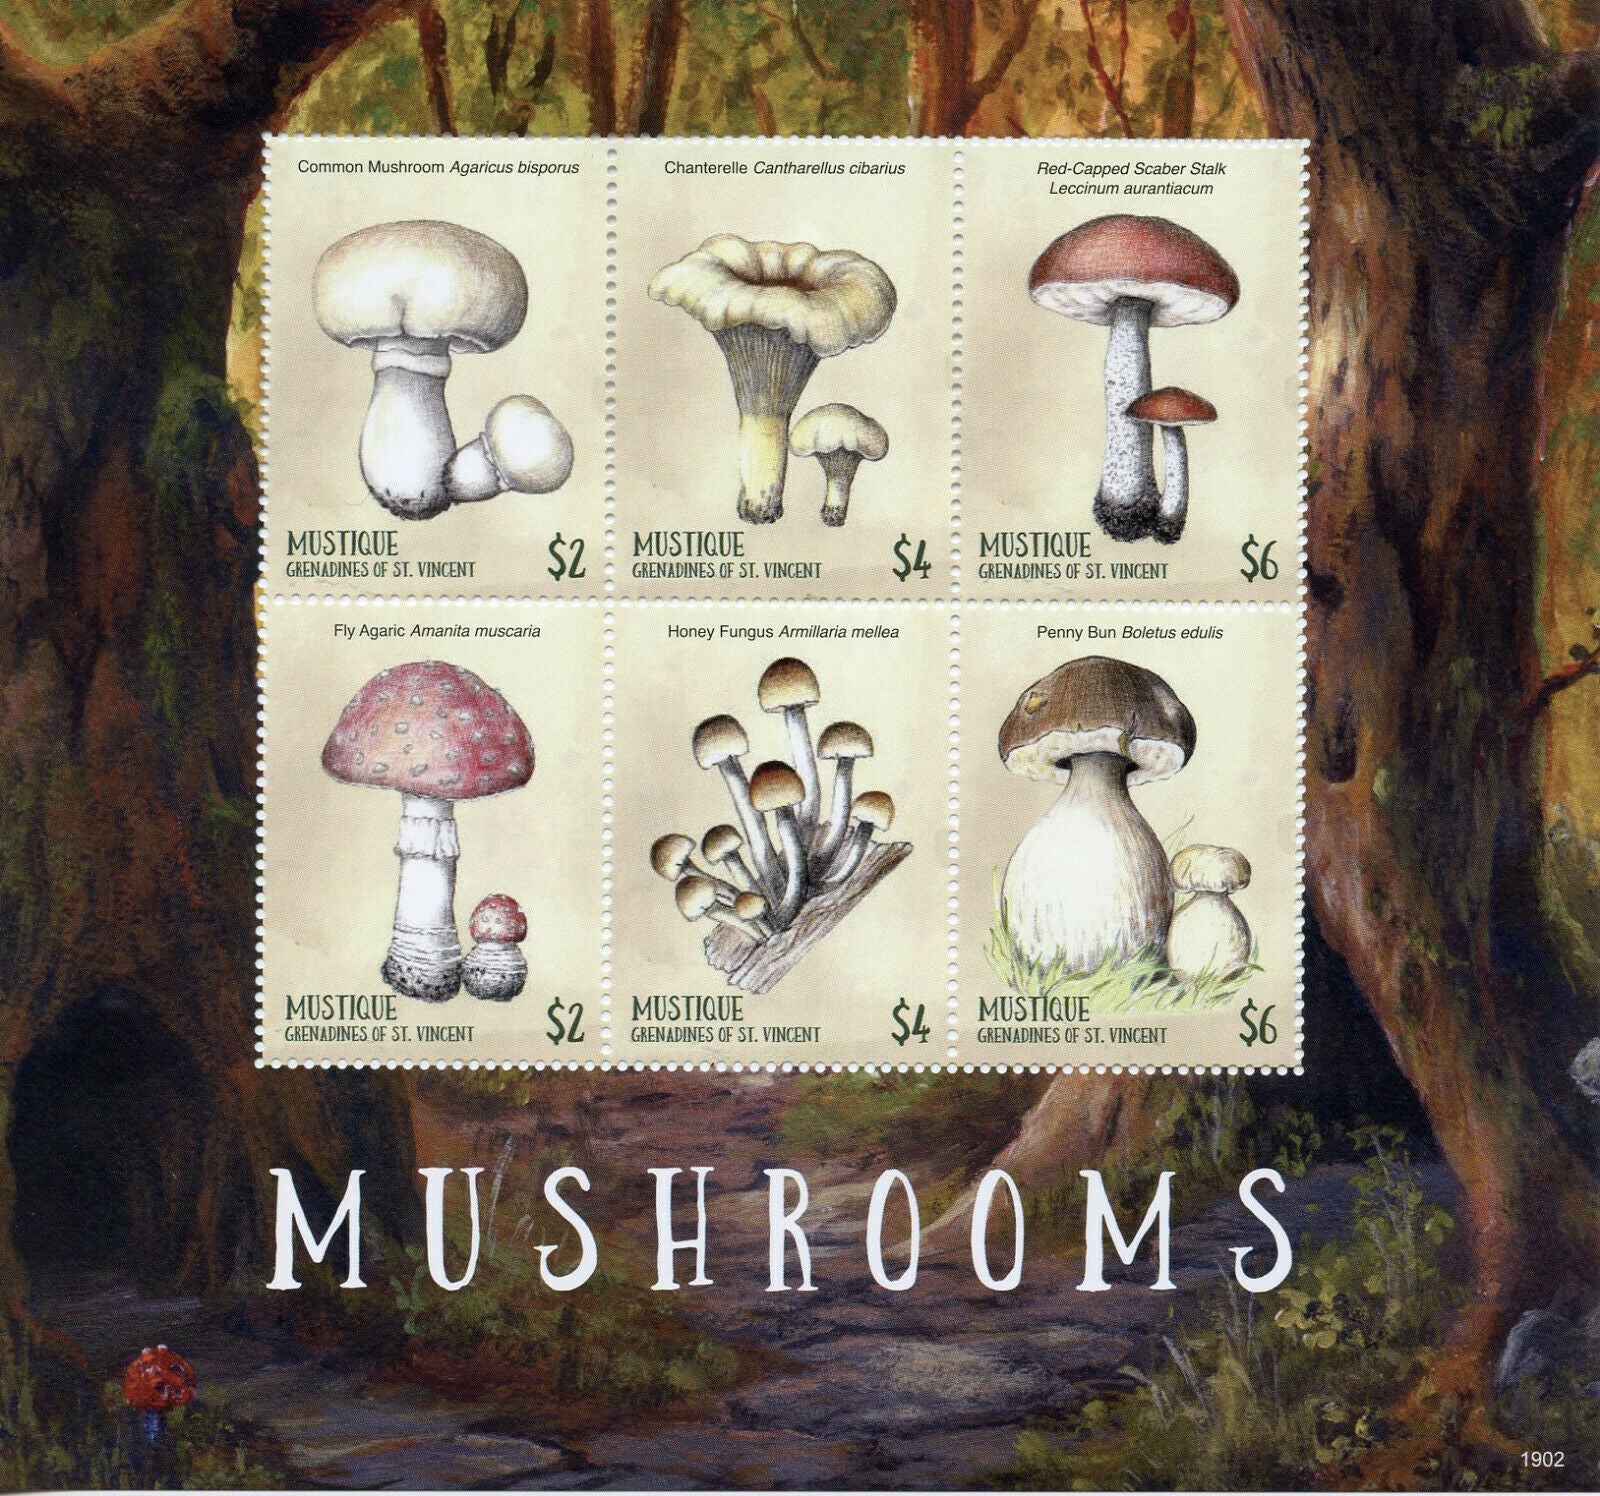 Mustique Grenadines St Vincent 2019 MNNH Mushrooms 6v M/S Fungi Nature Stamps